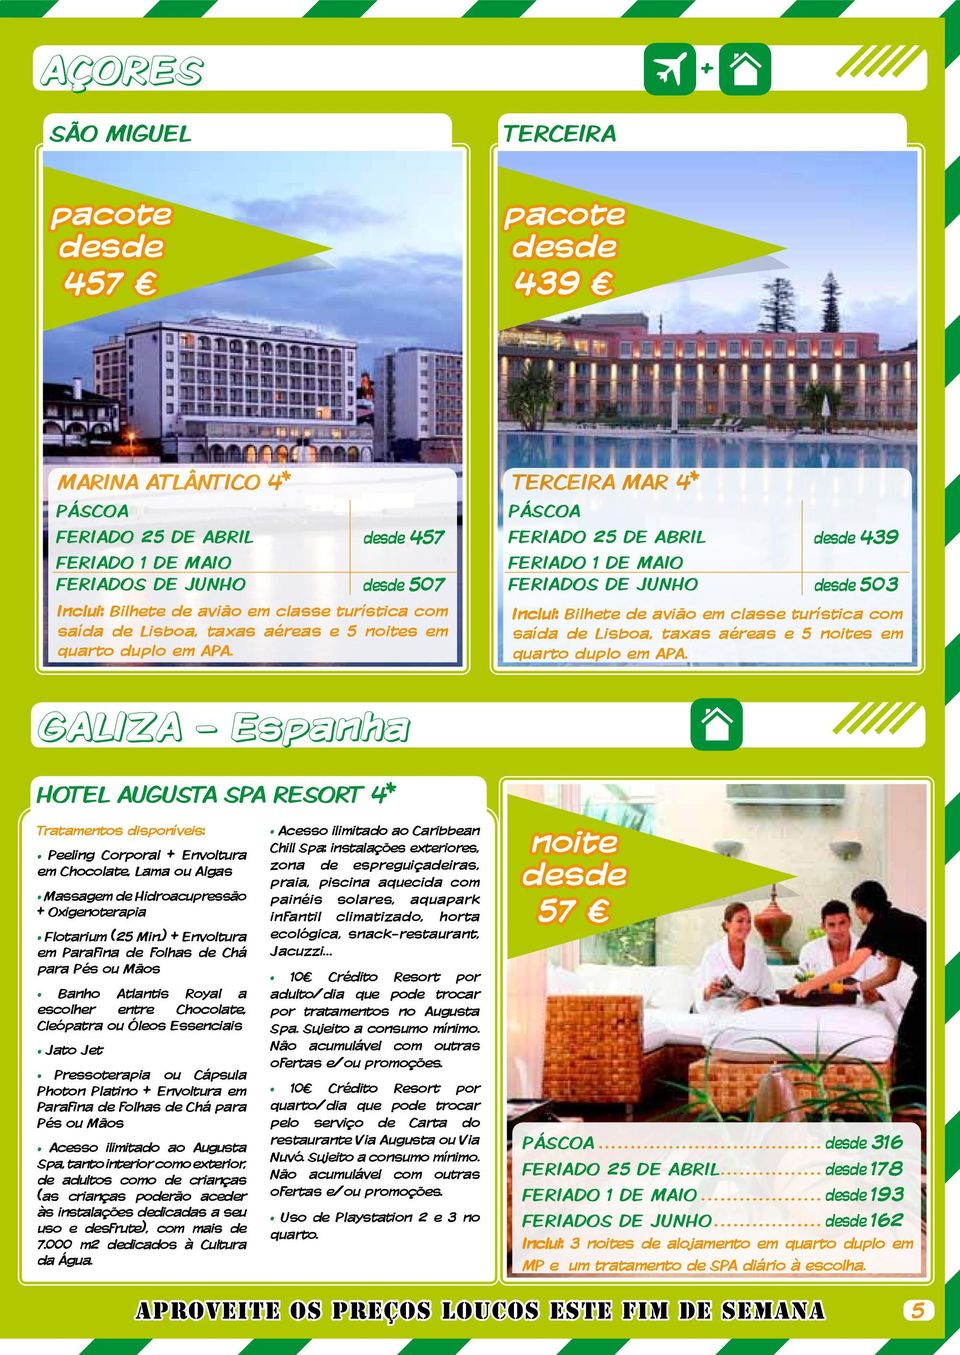 GALIZA - Espanha Hotel Augusta Spa Resort 4* Tratamentos disponíveis: Peeling Corporal + Envoltura em Chocolate, Lama ou Algas Massagem de Hidroacupressão + Oxigenoterapia Flotarium (25 Min.